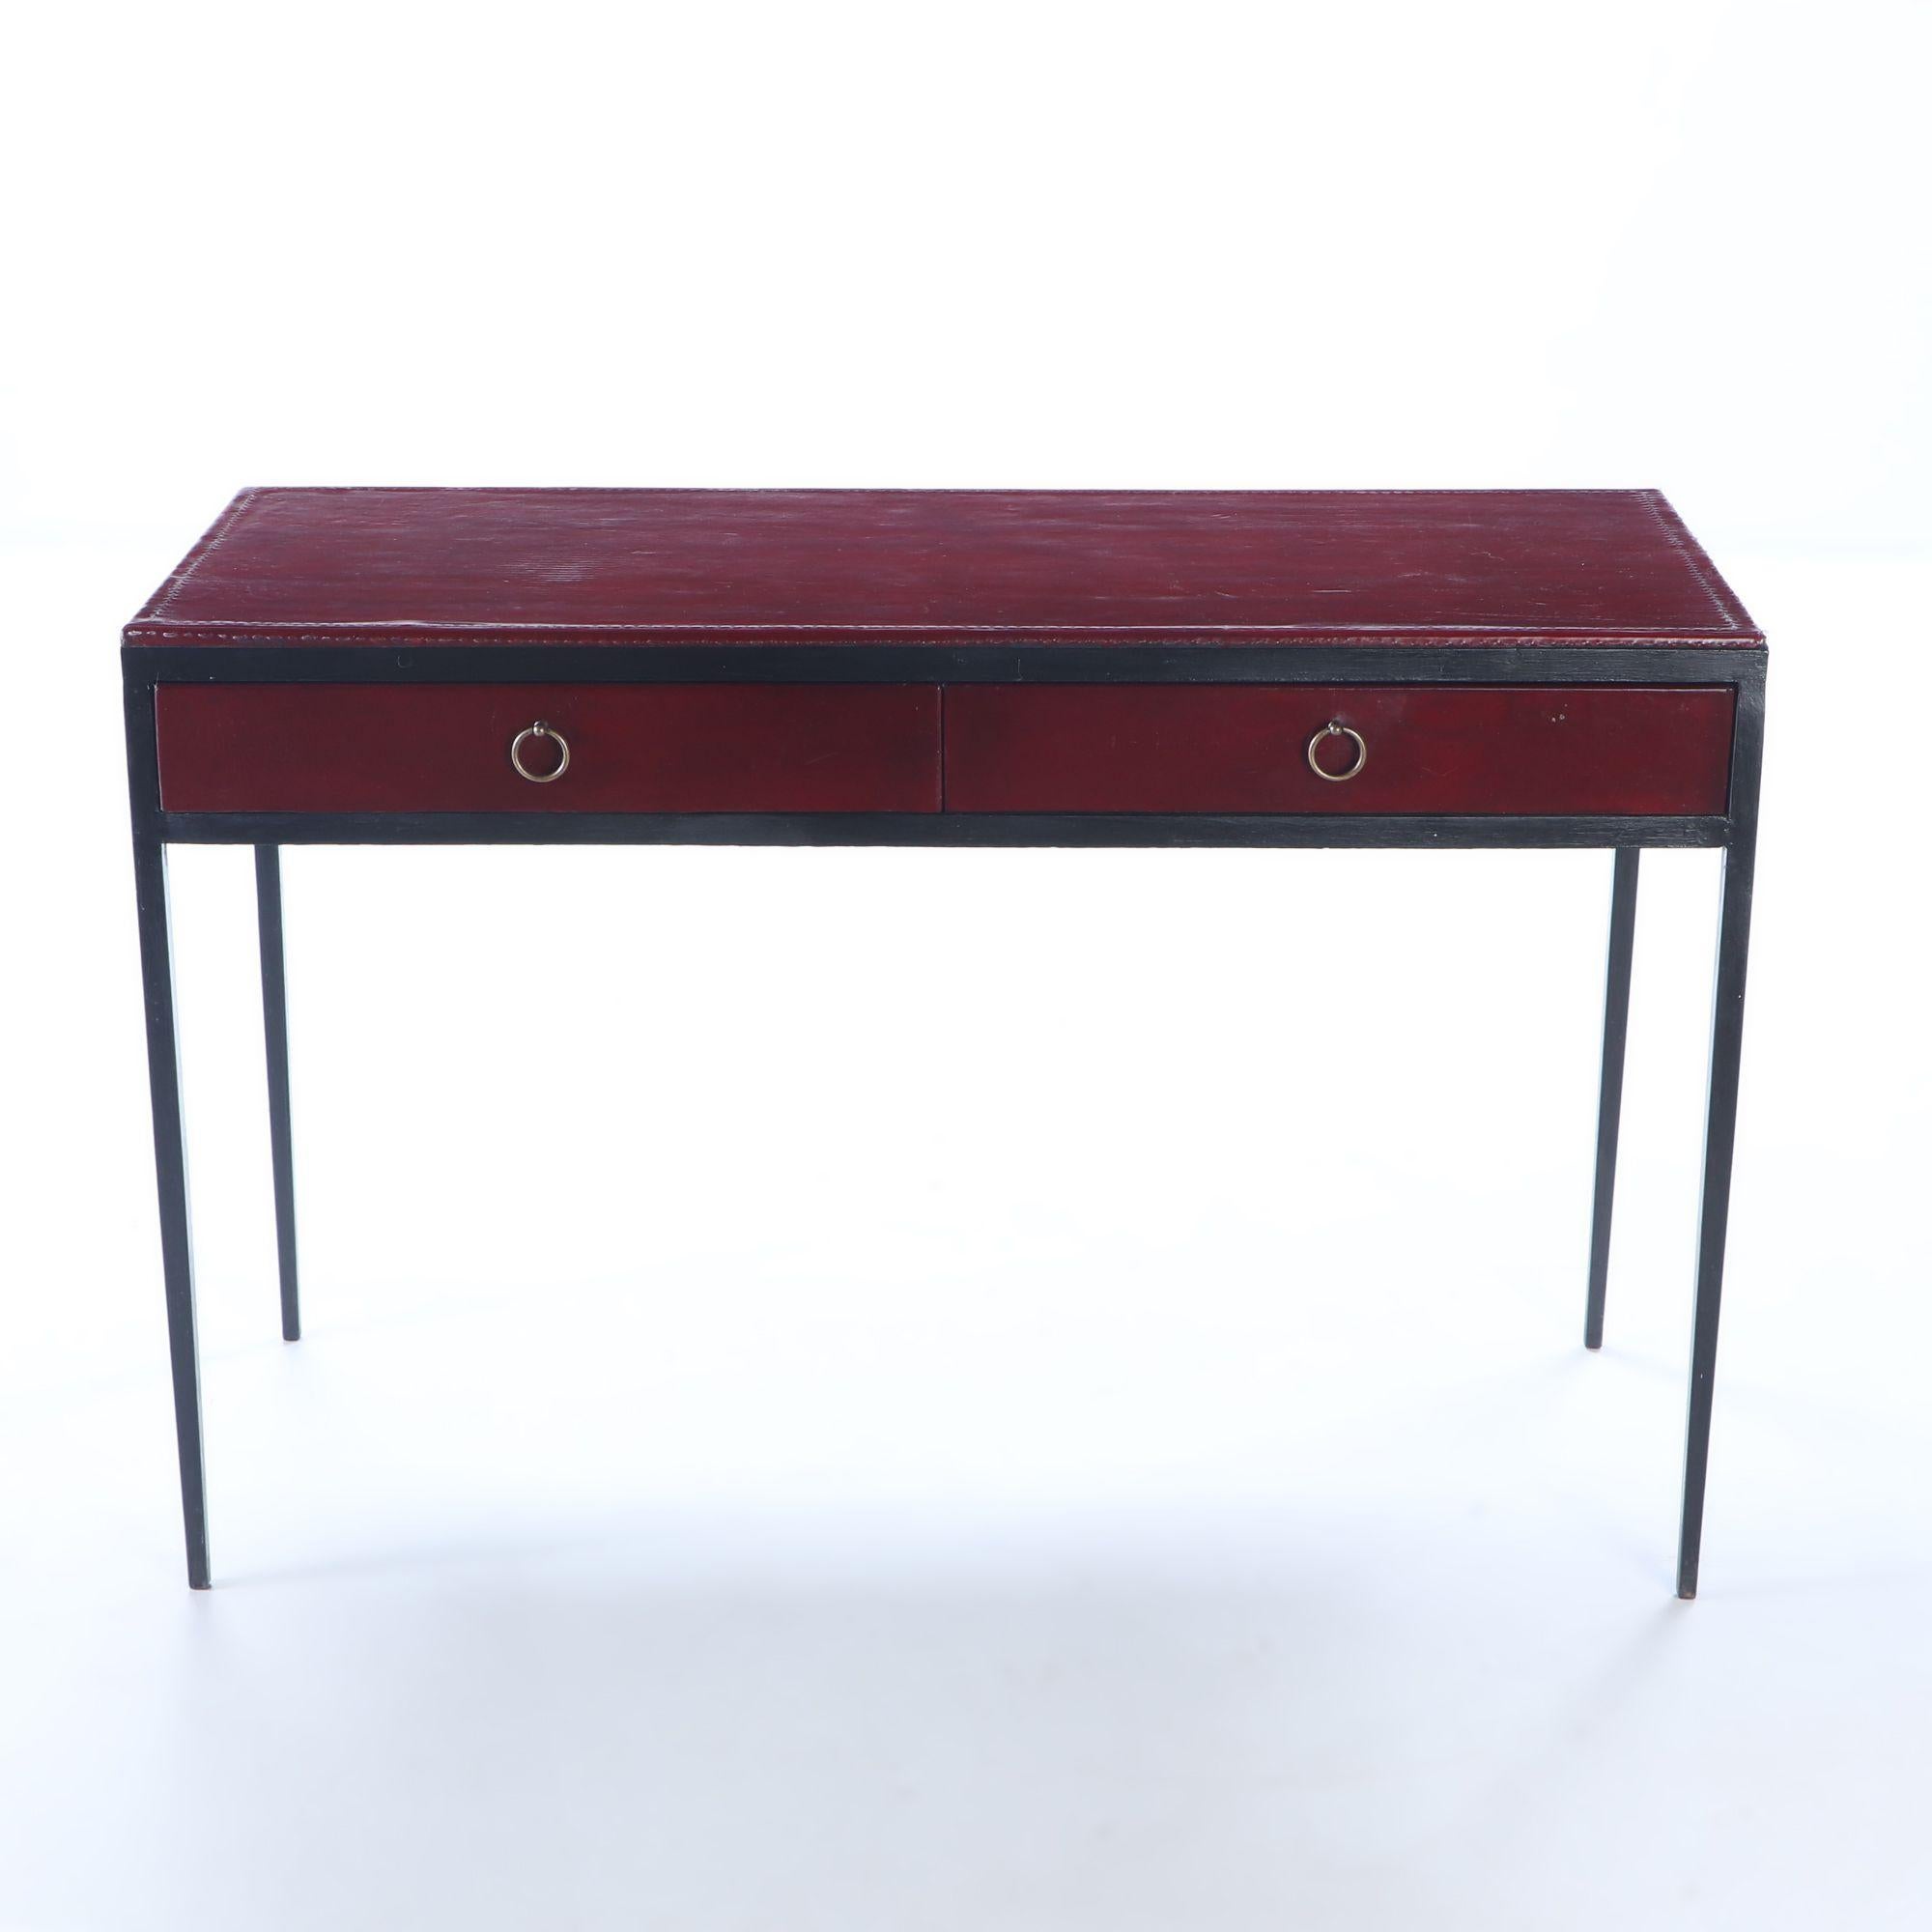 Schreibtisch aus Eisen und rotem Leder mit zwei Schubladen in der Art von Jean-Michel Frank. Individuelle Bestellungen möglich.